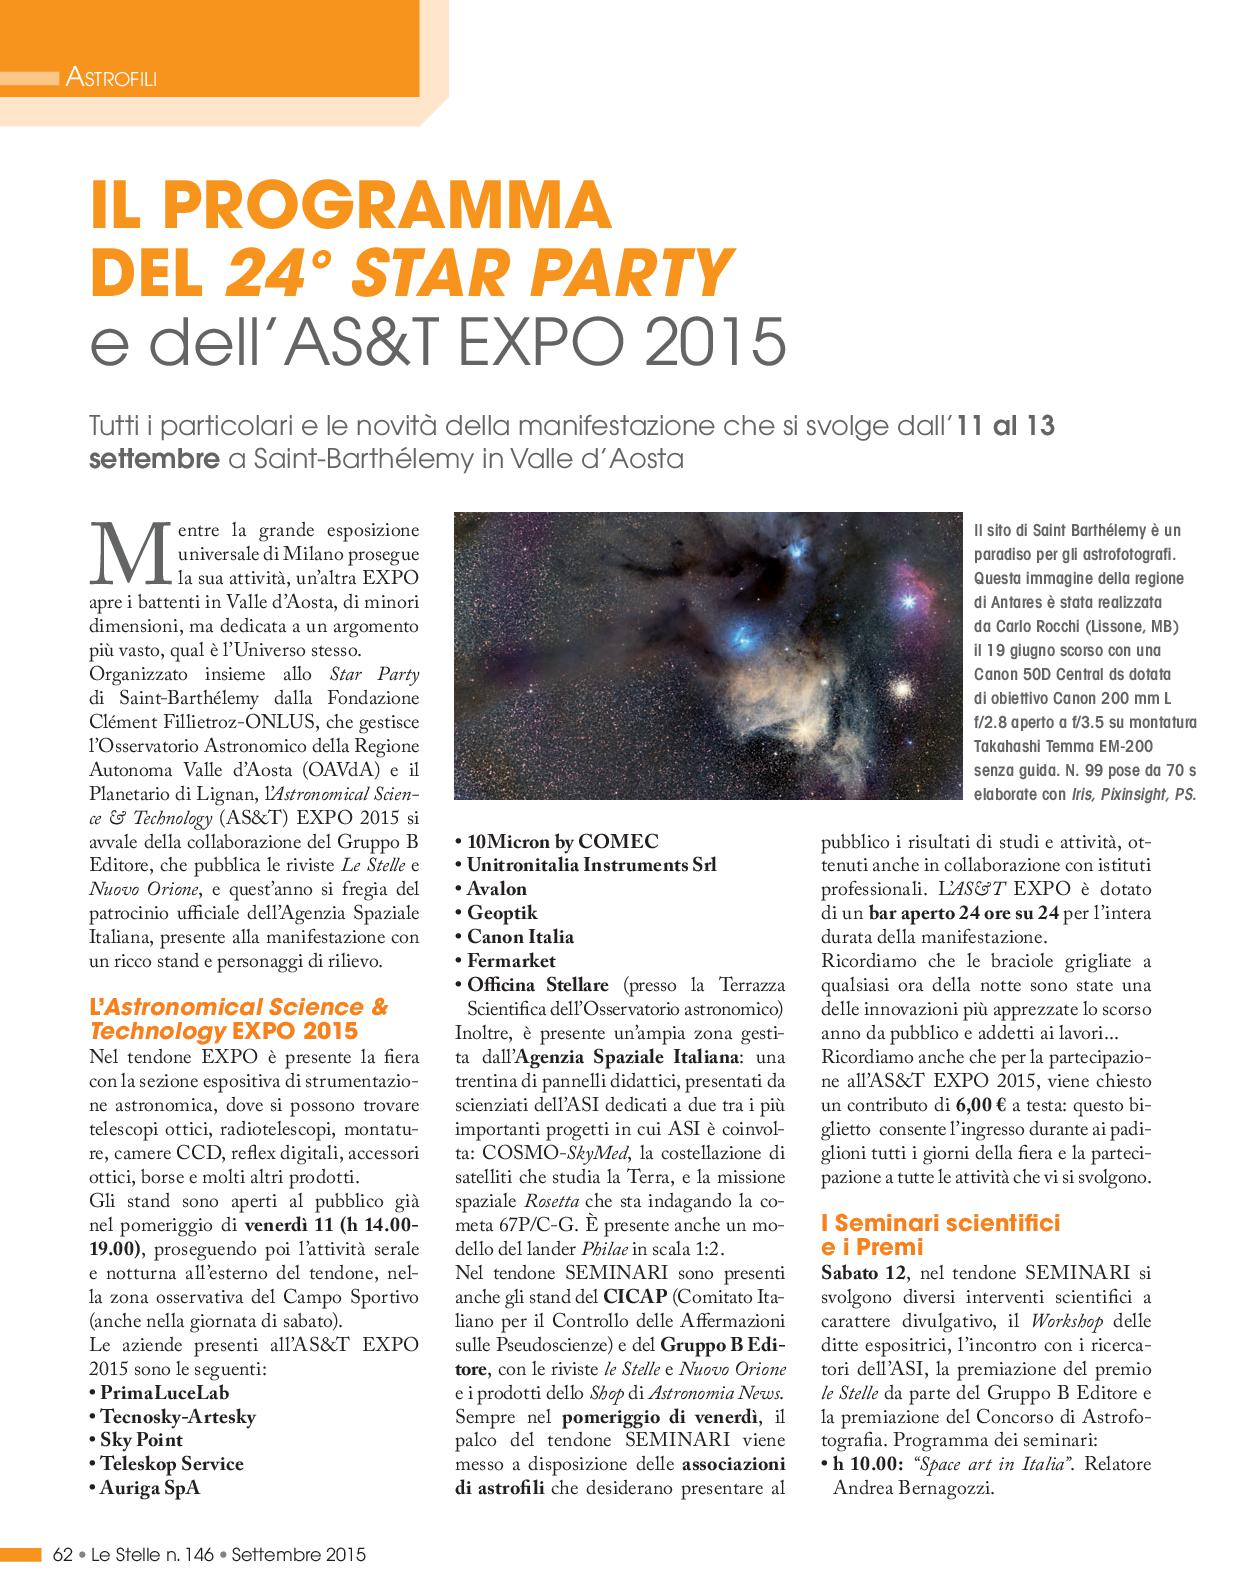 IL PROGRAMMA DEL 24° STAR PARTY e dell’AS&T EXPO 2015